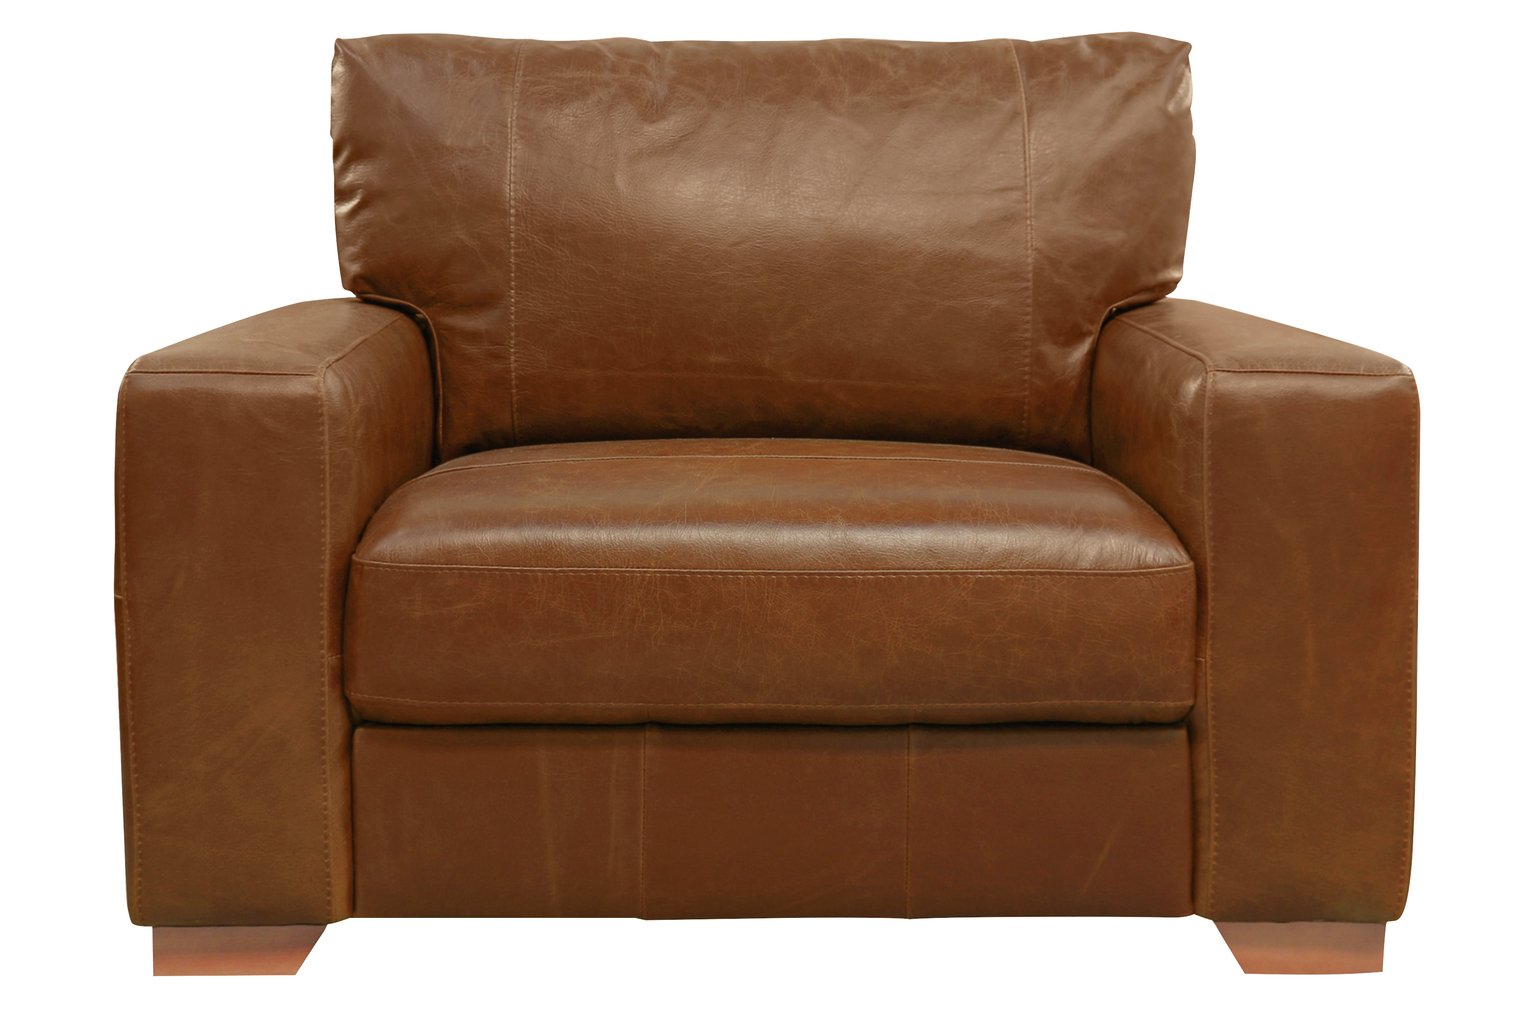 Argos Home Eton Leather Cuddle Chair - Tan (3789184) | Argos Price